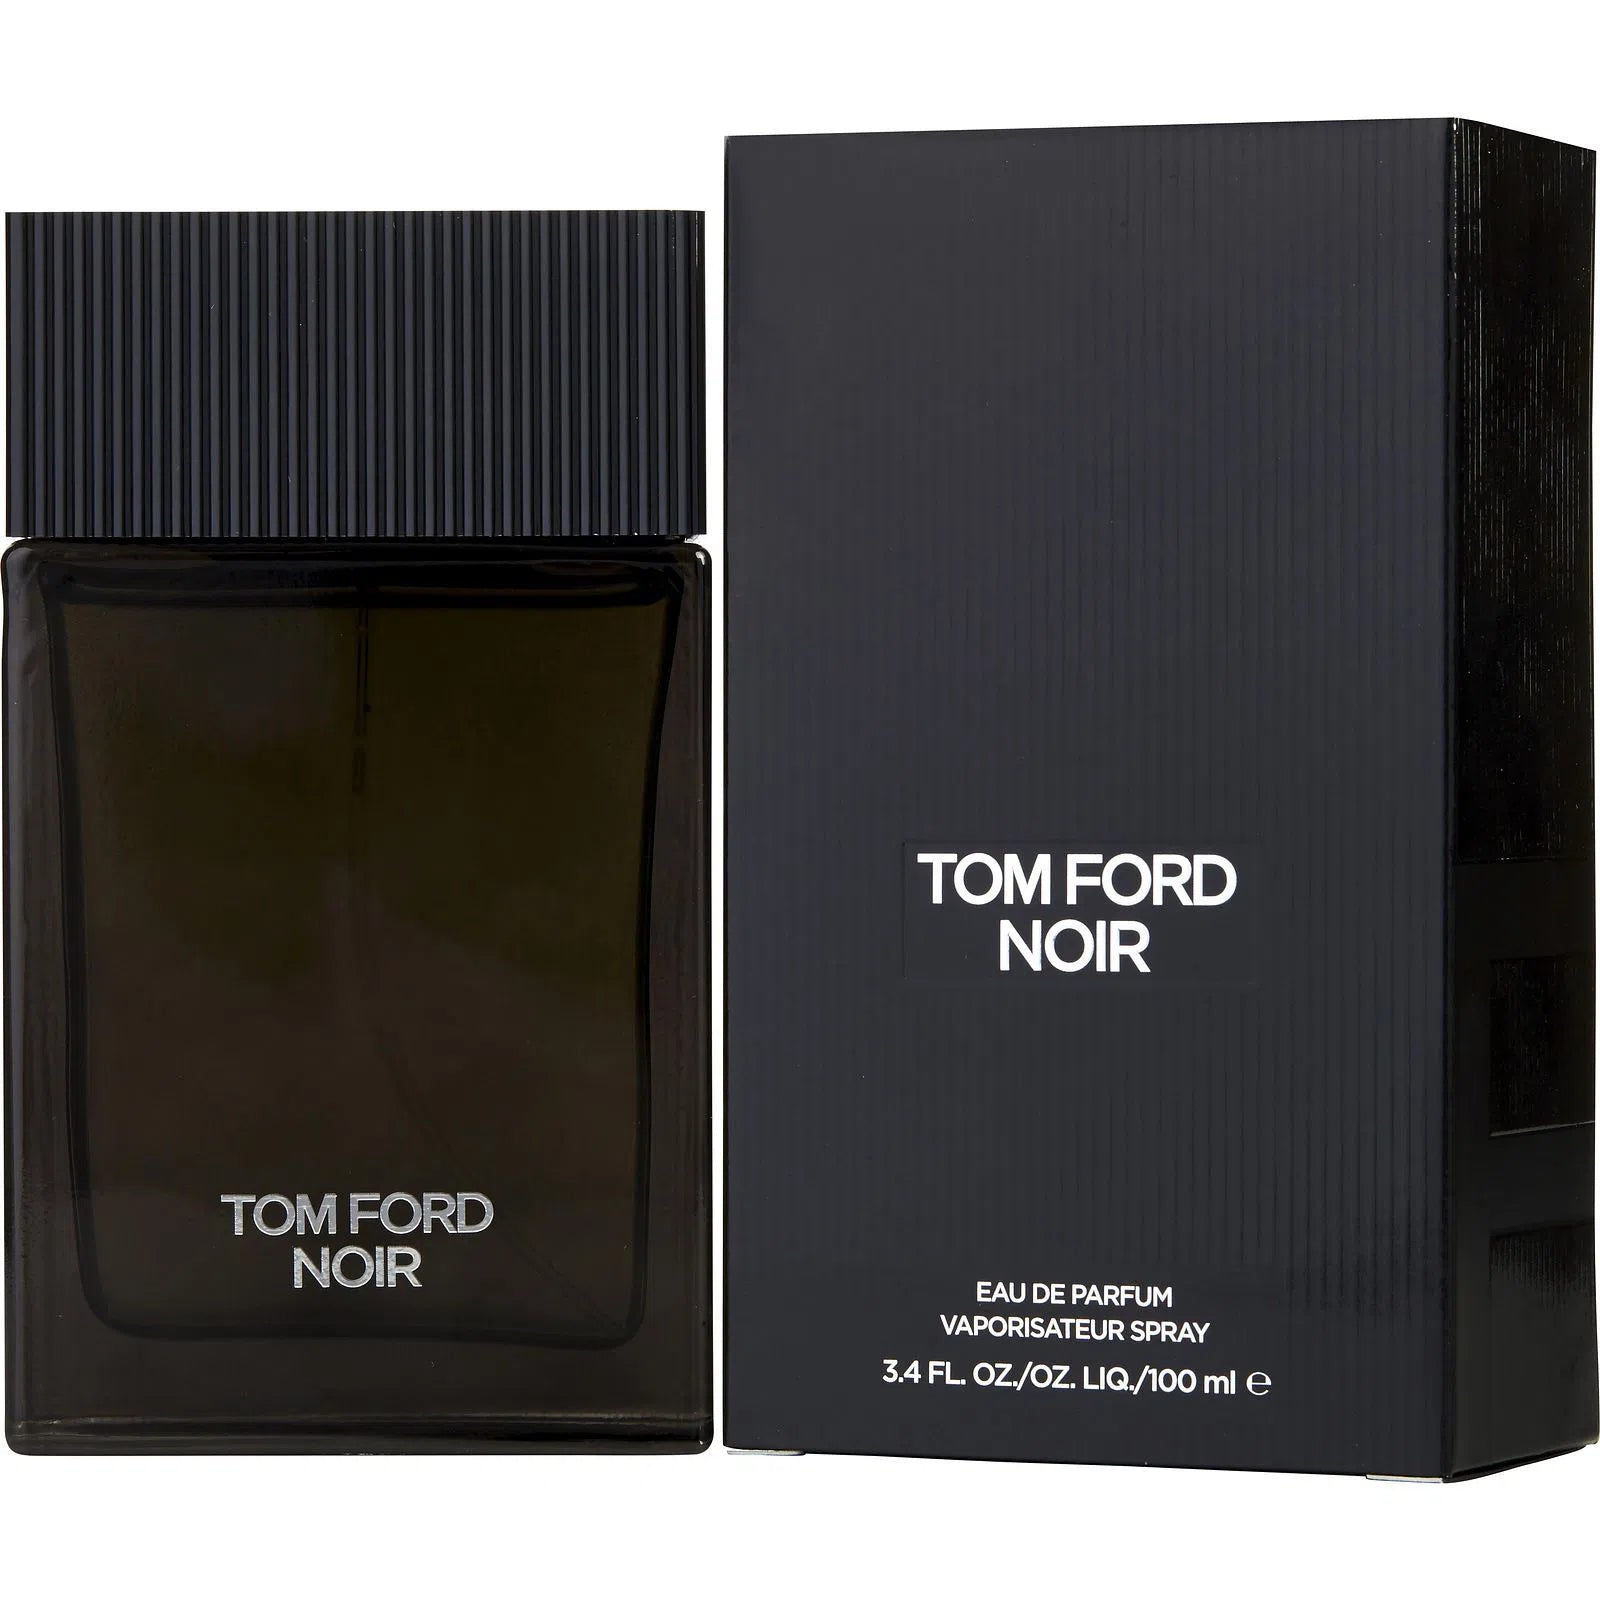 Perfume Tom Ford Noir EDP (M) / 100 ml - 888066015509- Prive Perfumes Honduras